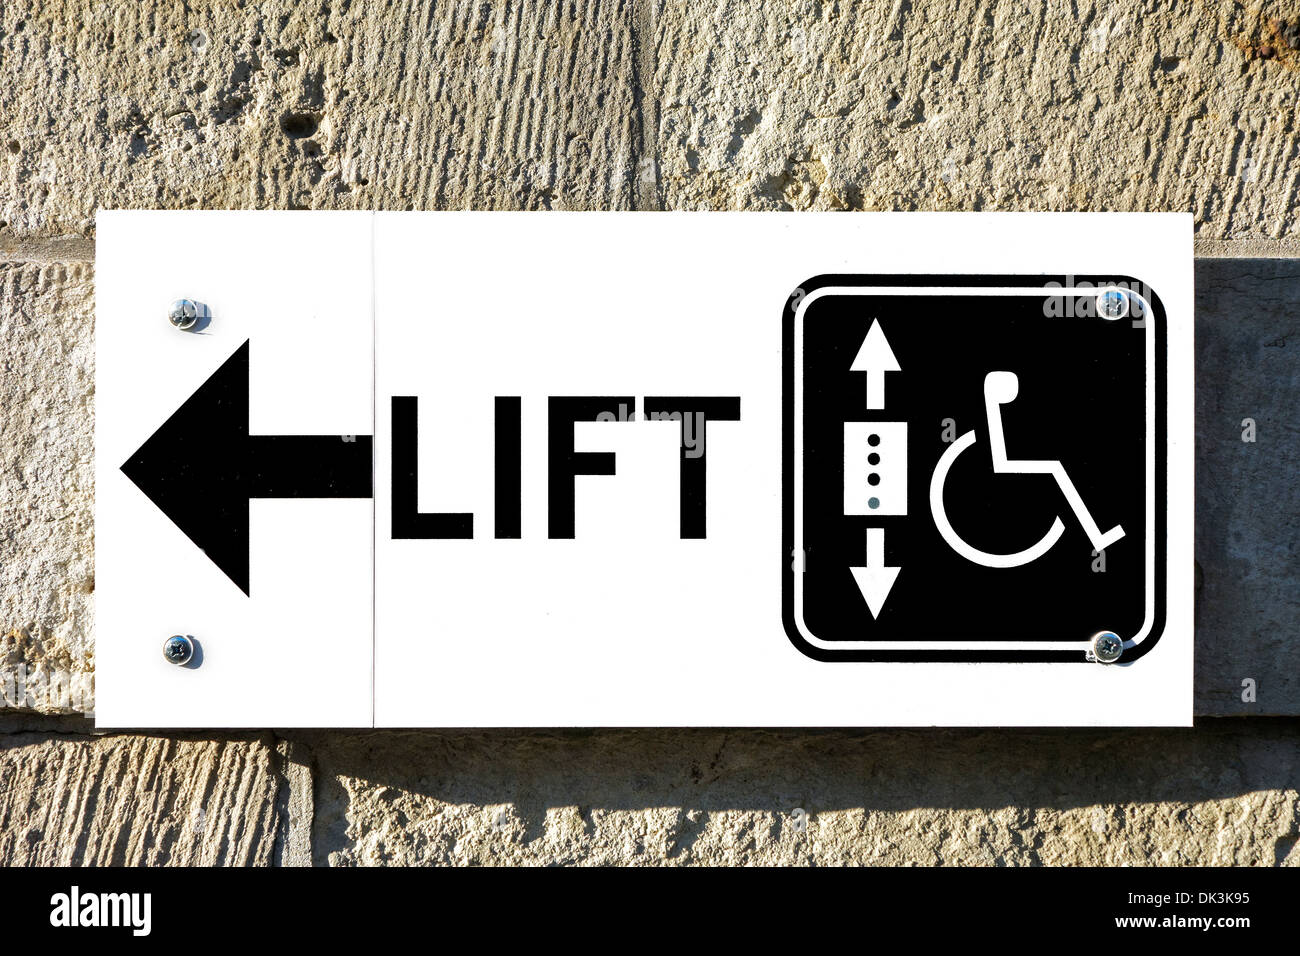 Schild mit Pfeil zeigt die Richtung zum Heben / Aufzug für Rollstuhlfahrer Benutzer und behinderten Personen Zugang Öffentlichkeit Gebäude Stockfoto